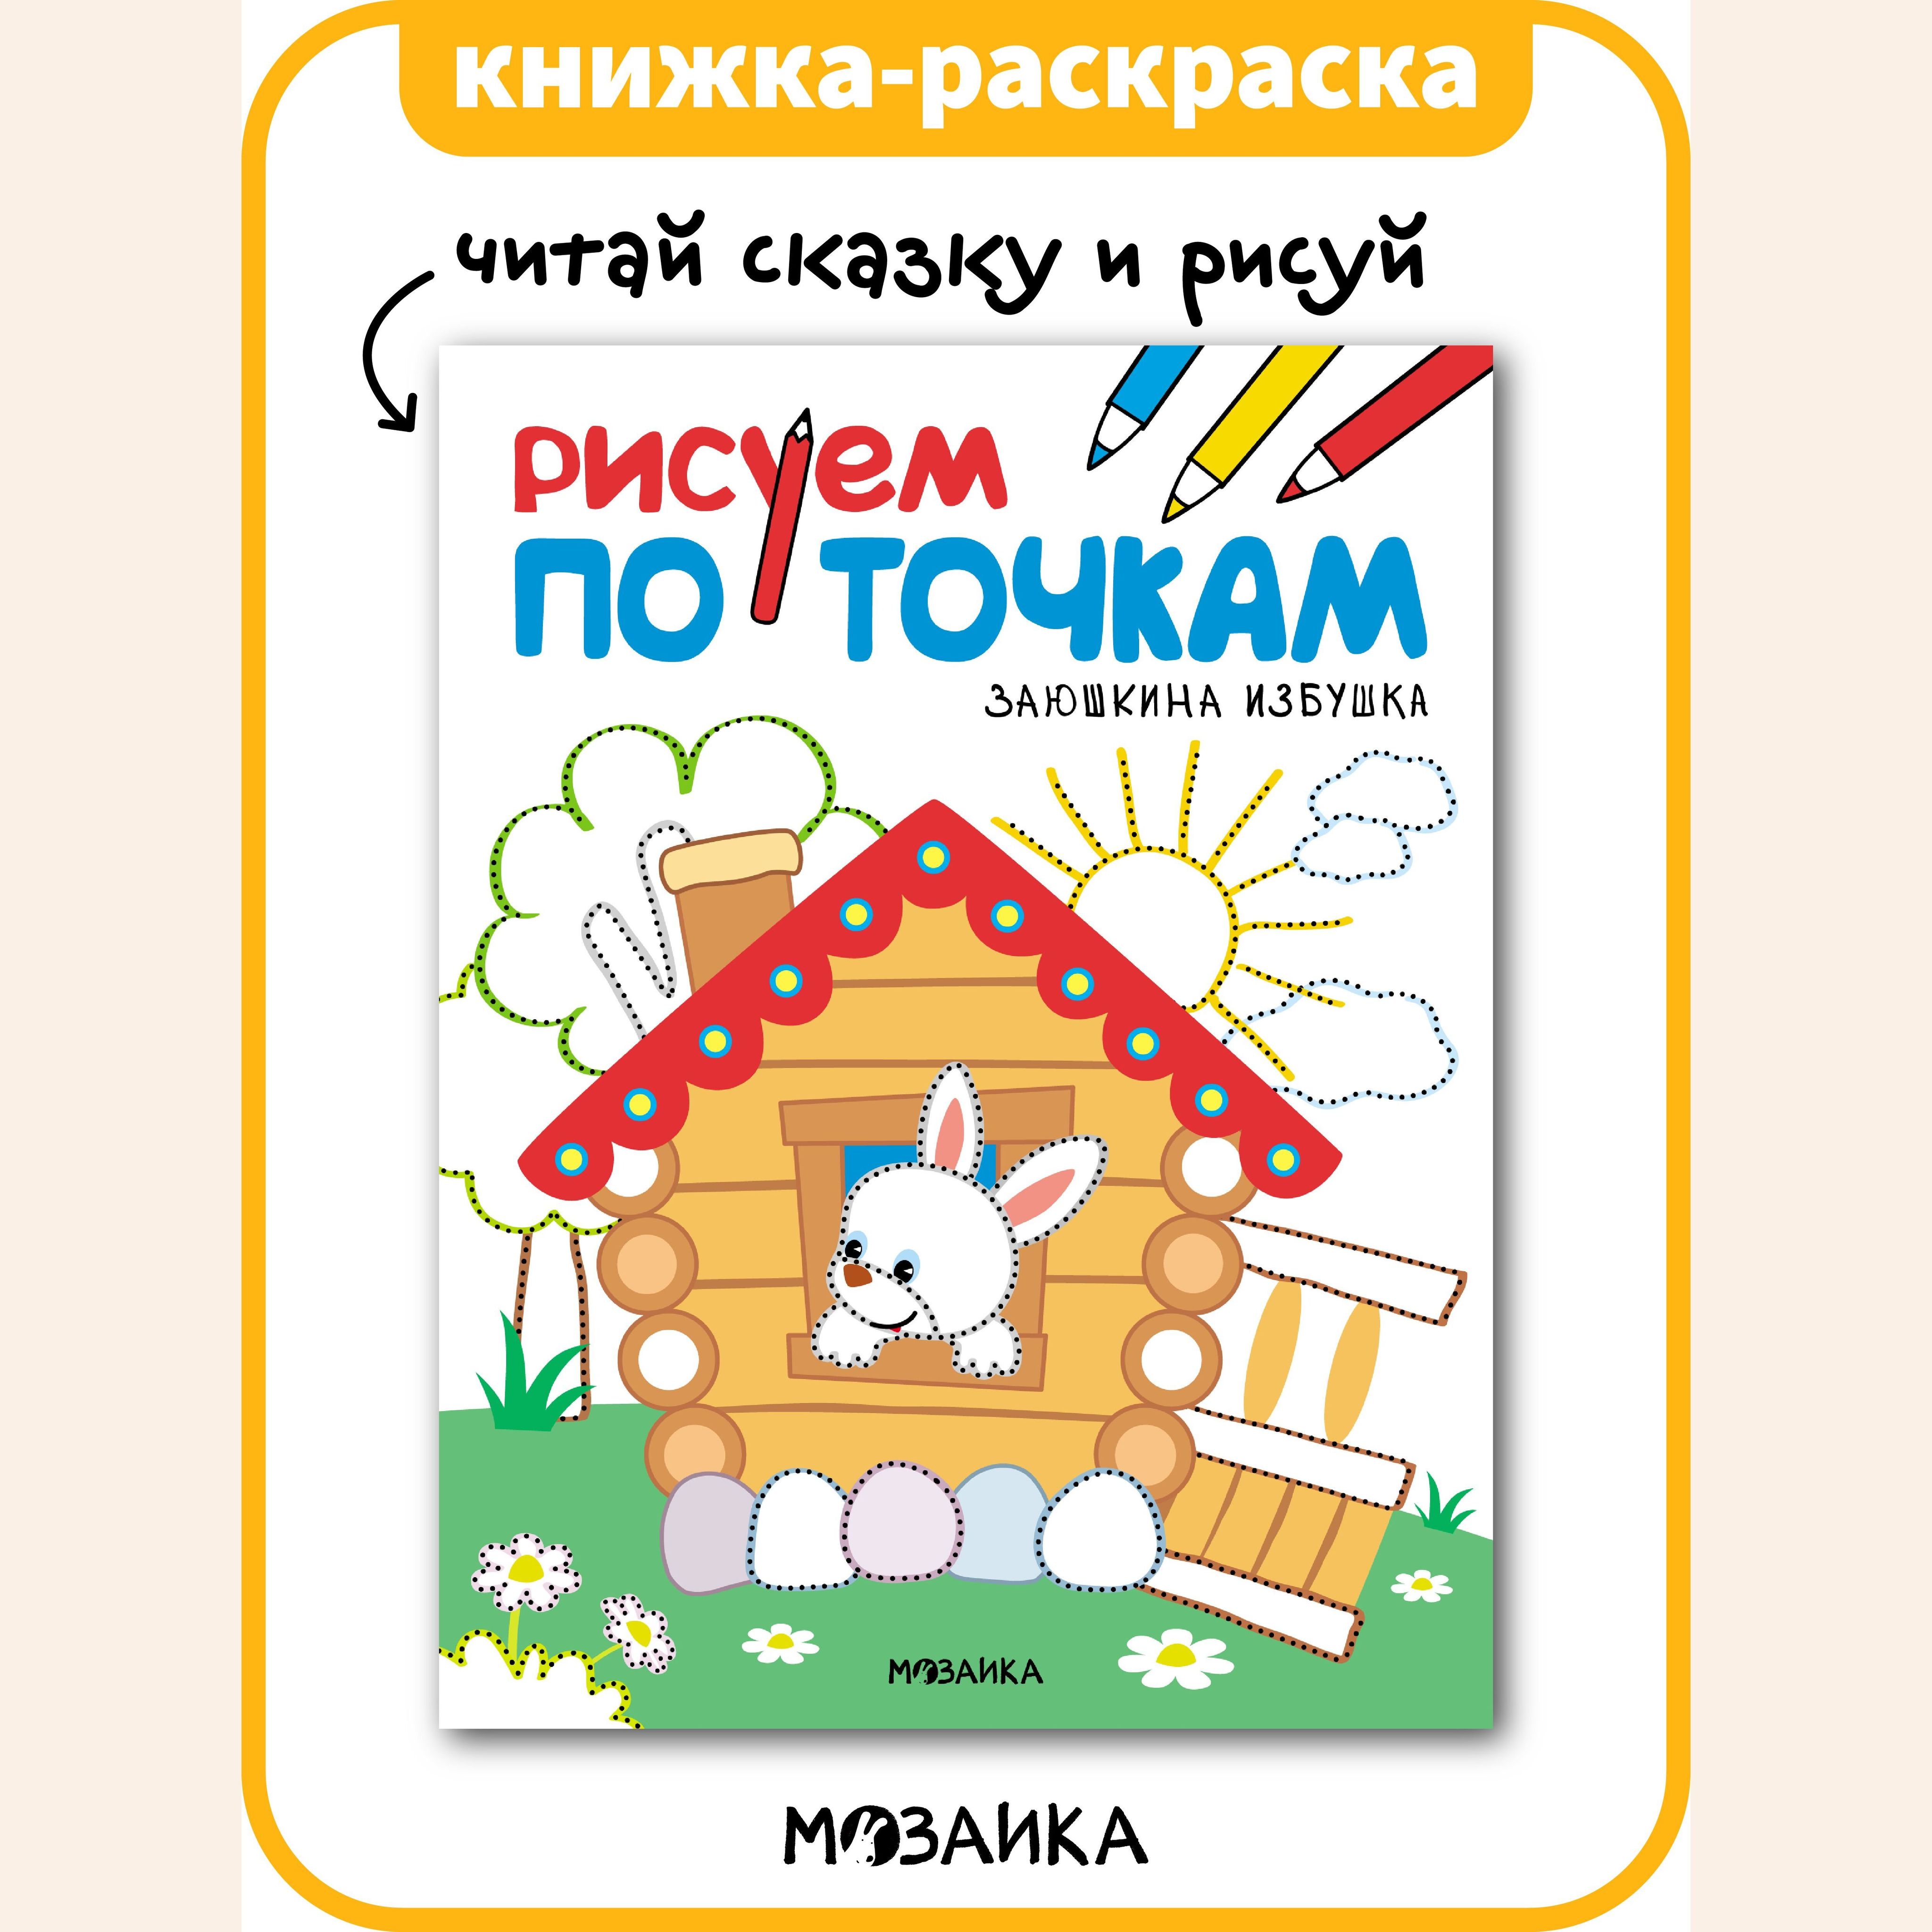 Сказки-раскраски. Заюшкина избушка. (Детская раскраска) купить в православном интернет магазине